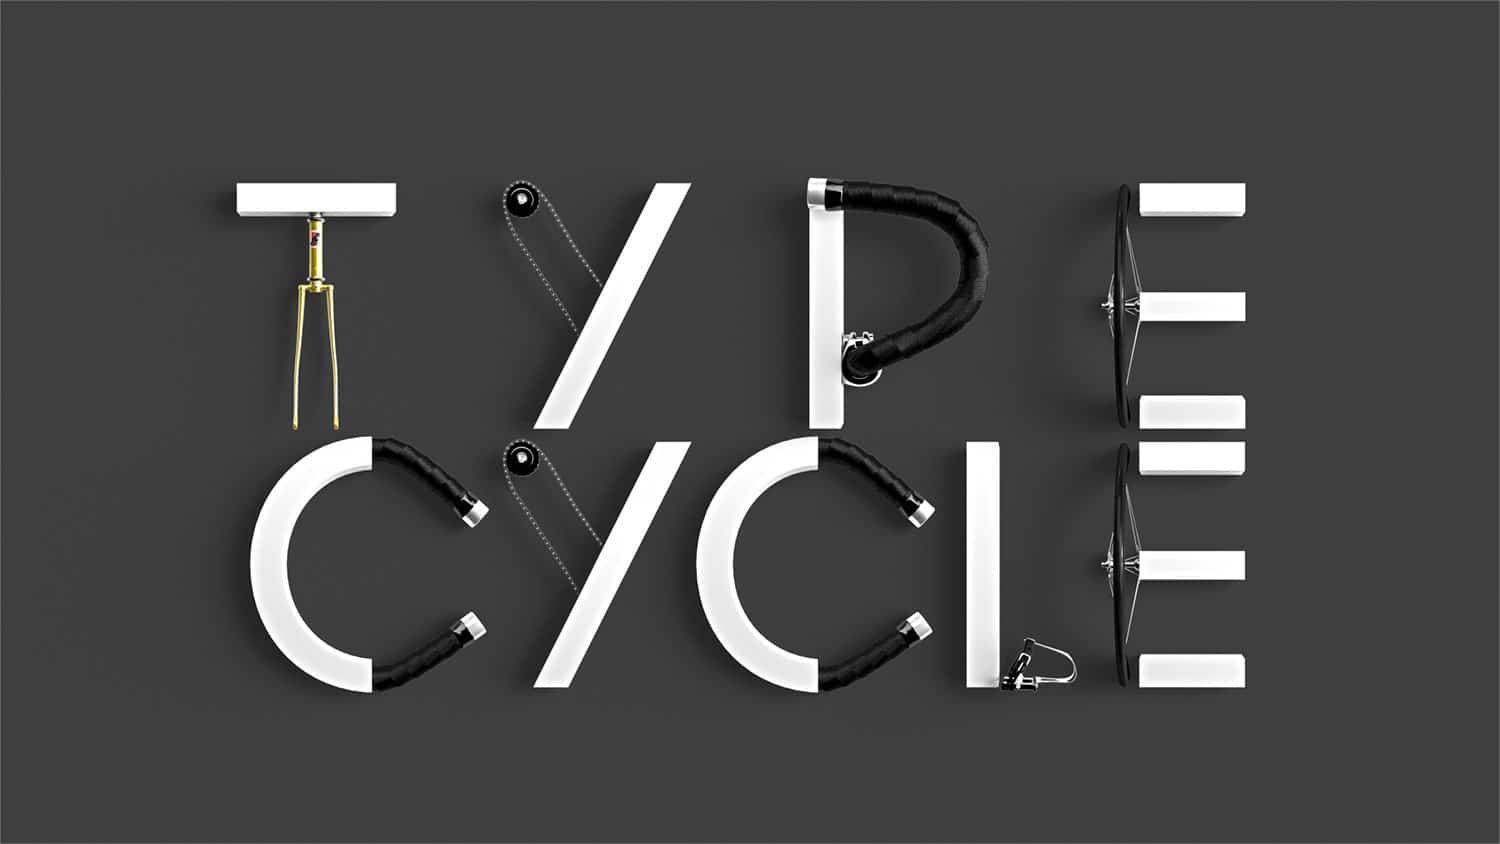 Cómo hacer letras 3D con una bicicleta | OVACEN